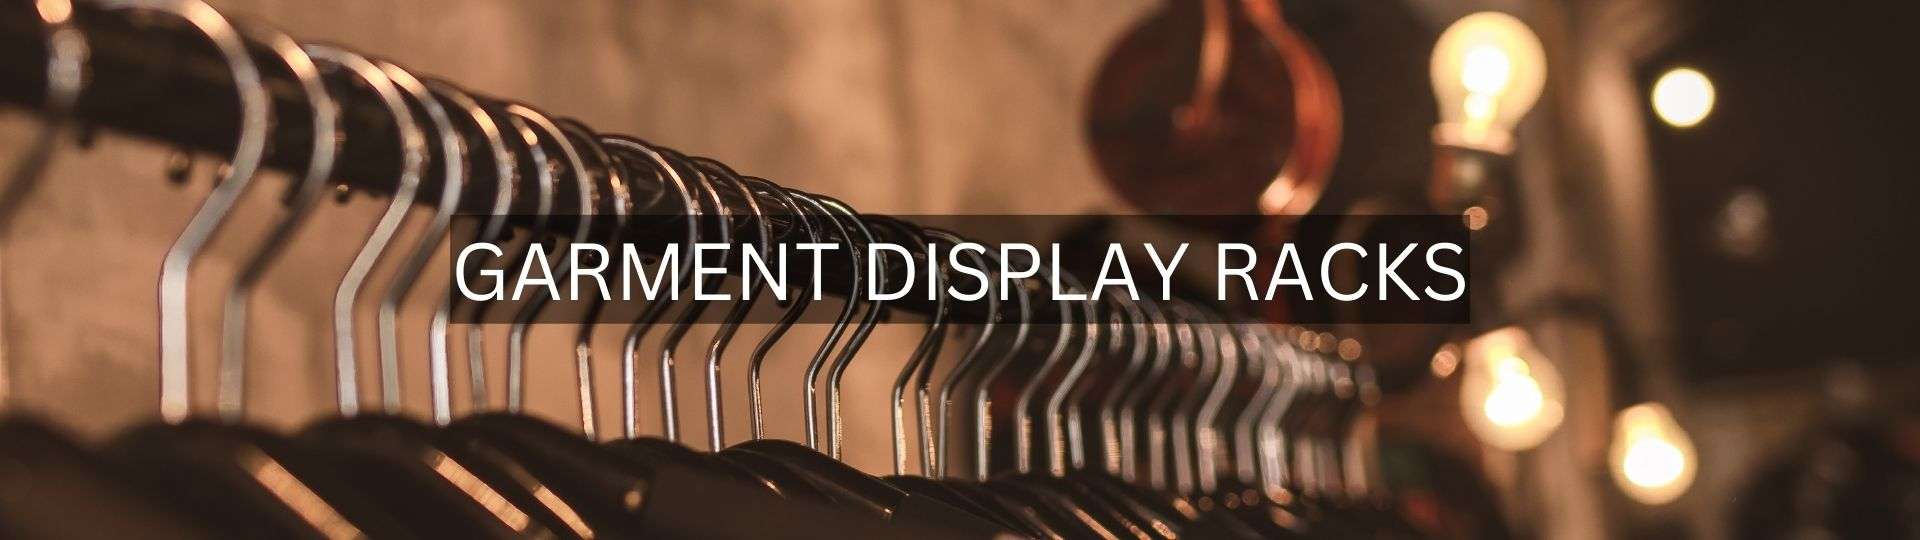 Buy Online Garment Display Racks at Best Price in Haryana